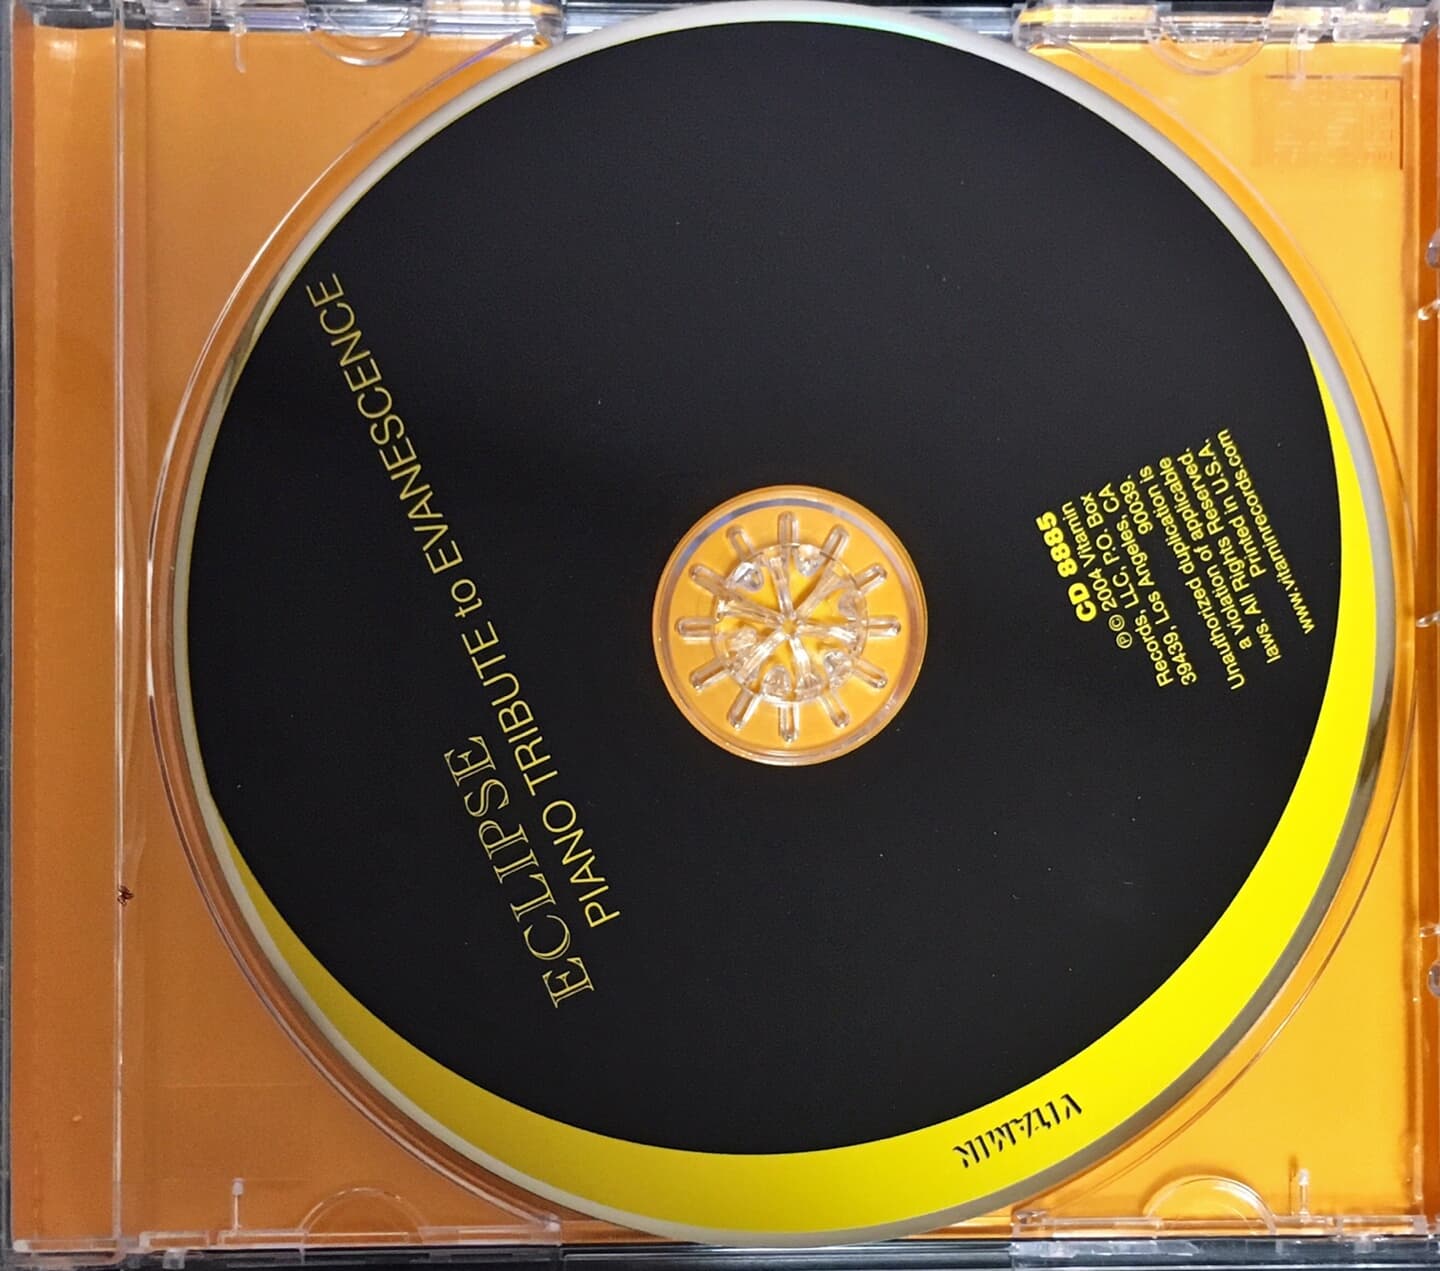 [수입반]Eclipse Piano Tribute to Evanescence Ark Sano 에반에센스 피아노 트리뷰트 앨범 CD